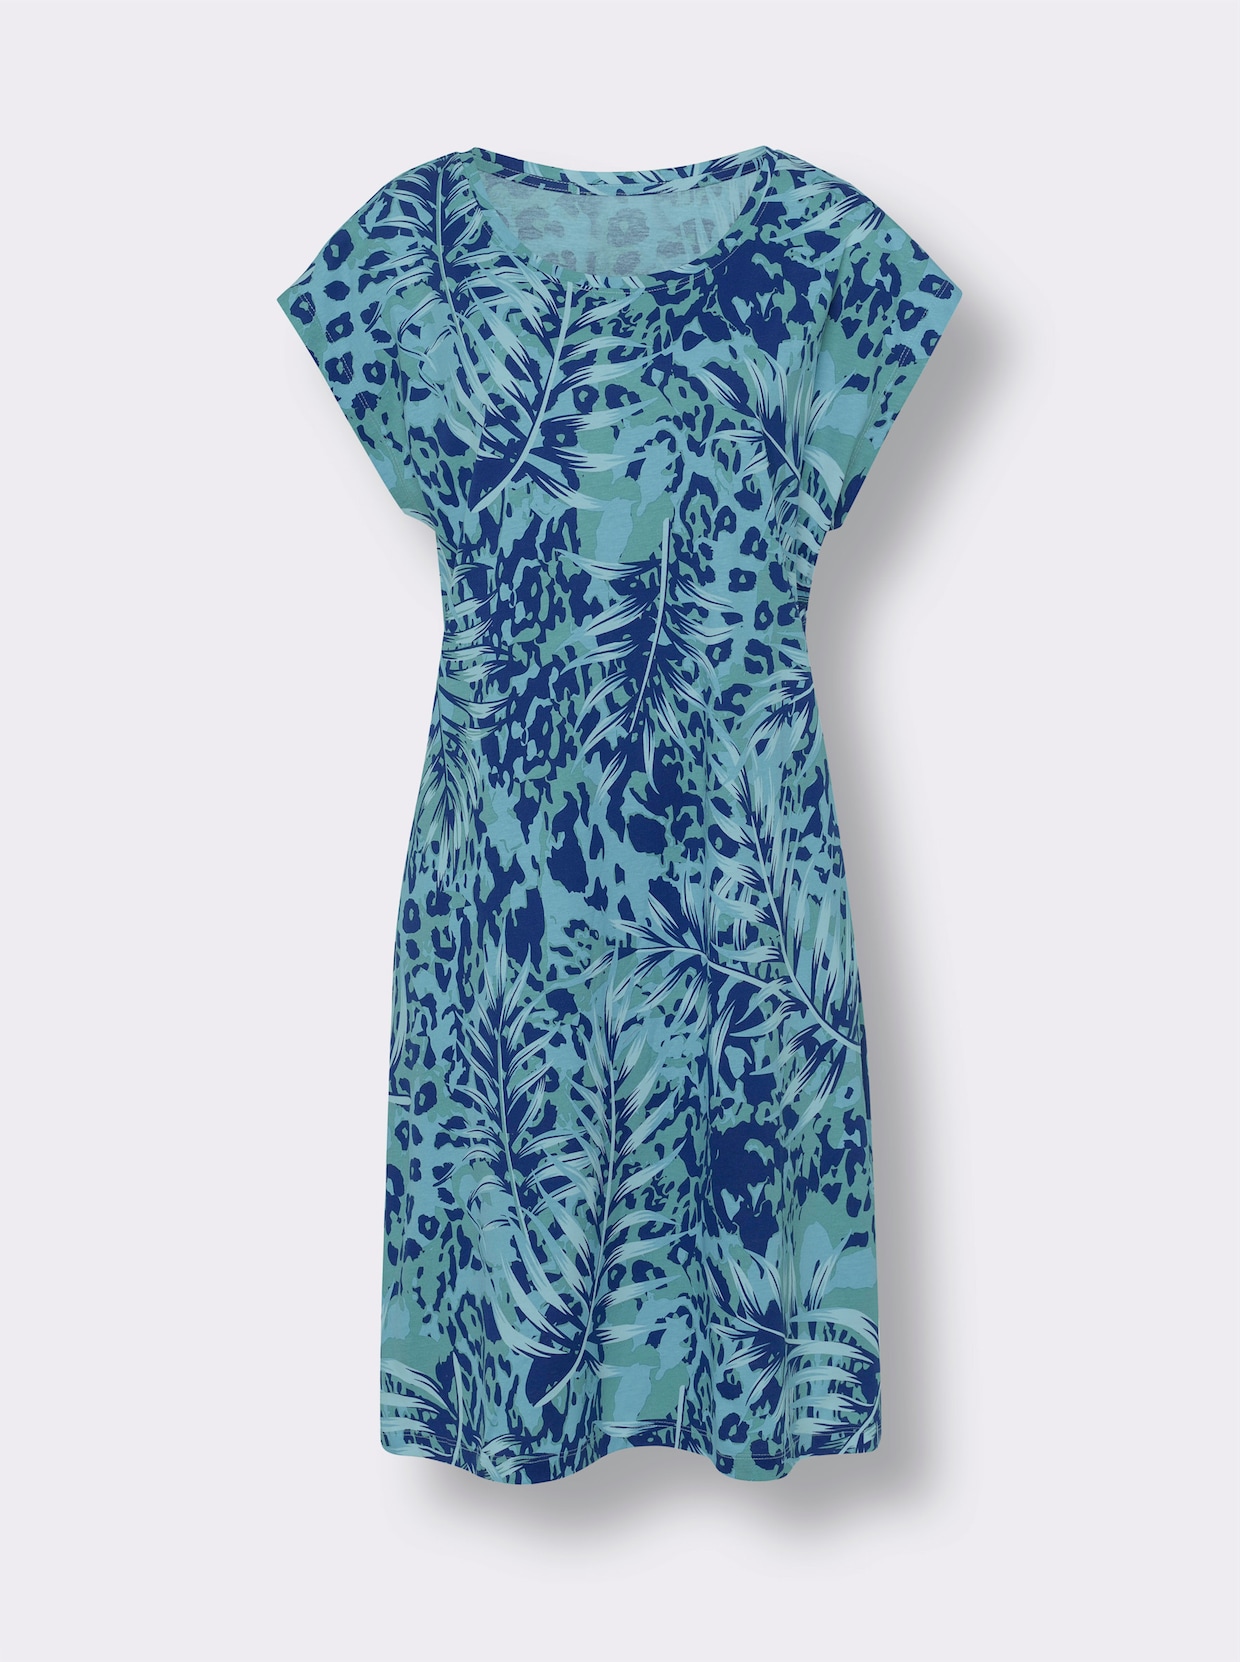 Letné šaty - kráľovsko modro-akvamarínová potlač